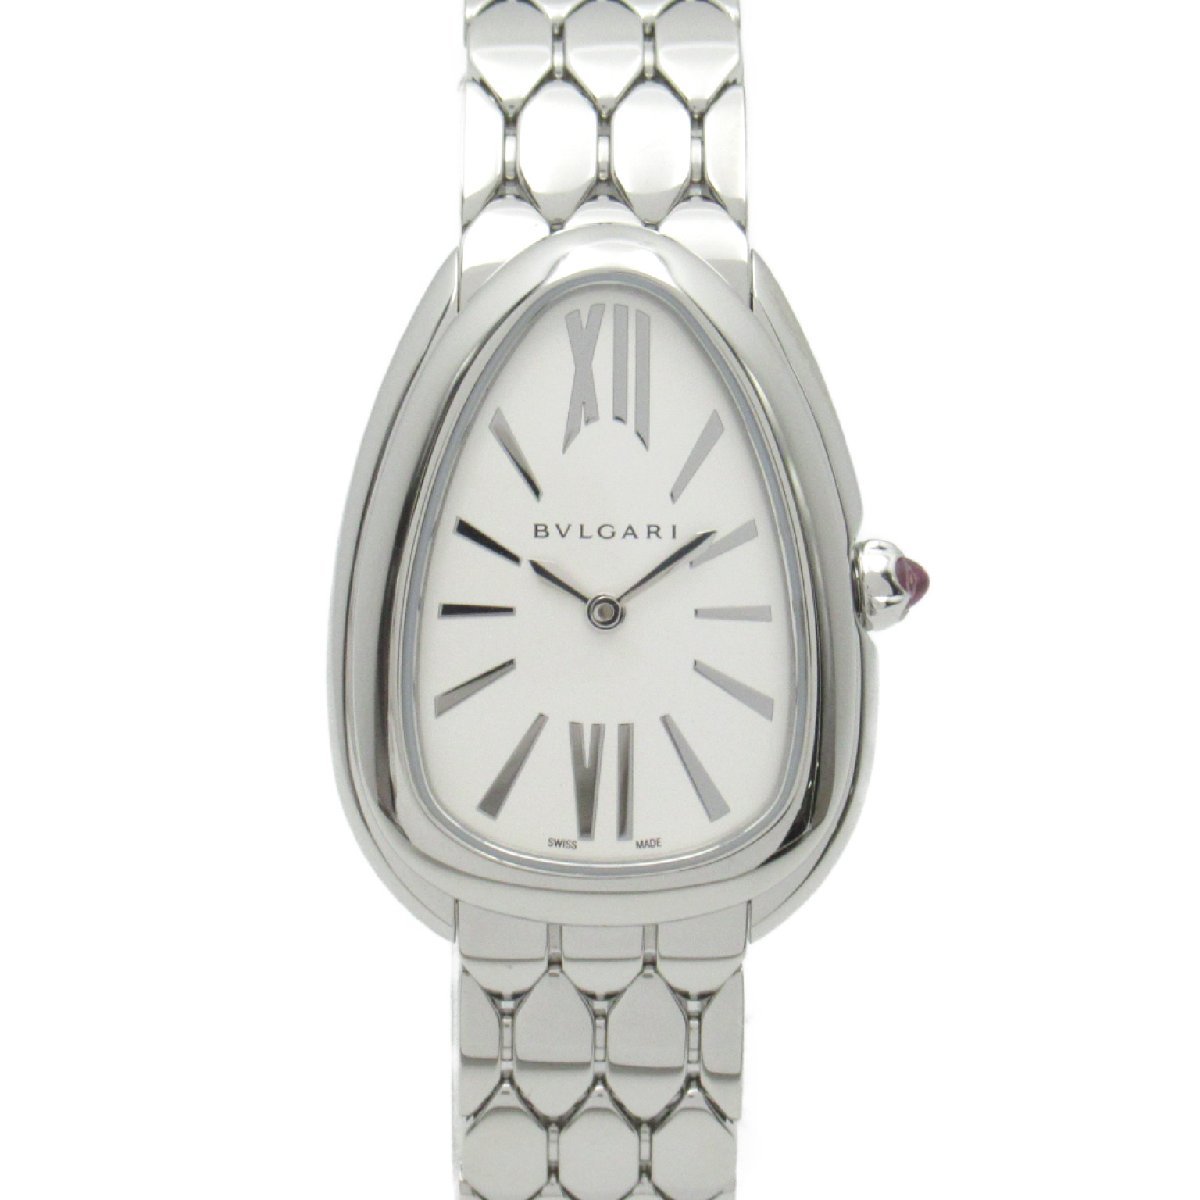 注目ショップ・ブランドのギフト セルペンティ 腕時計 ブルガリ